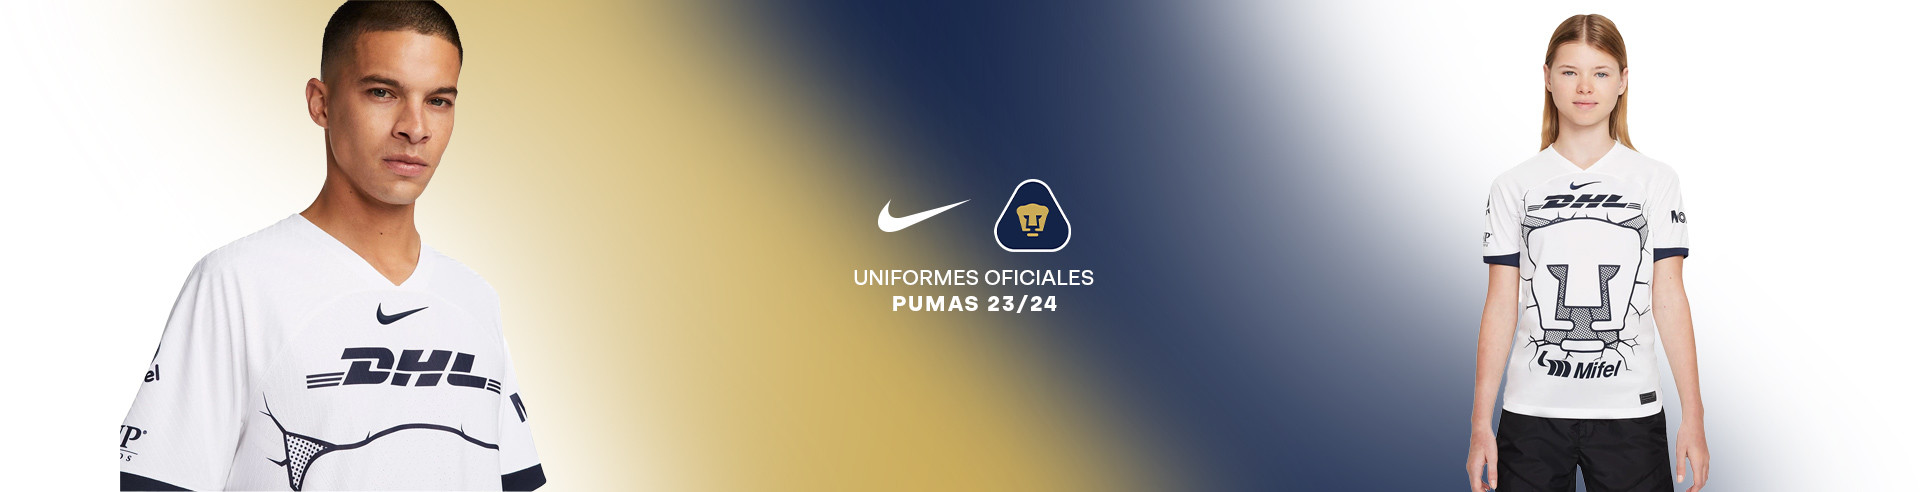 Nike PUMAS kITS 23/24